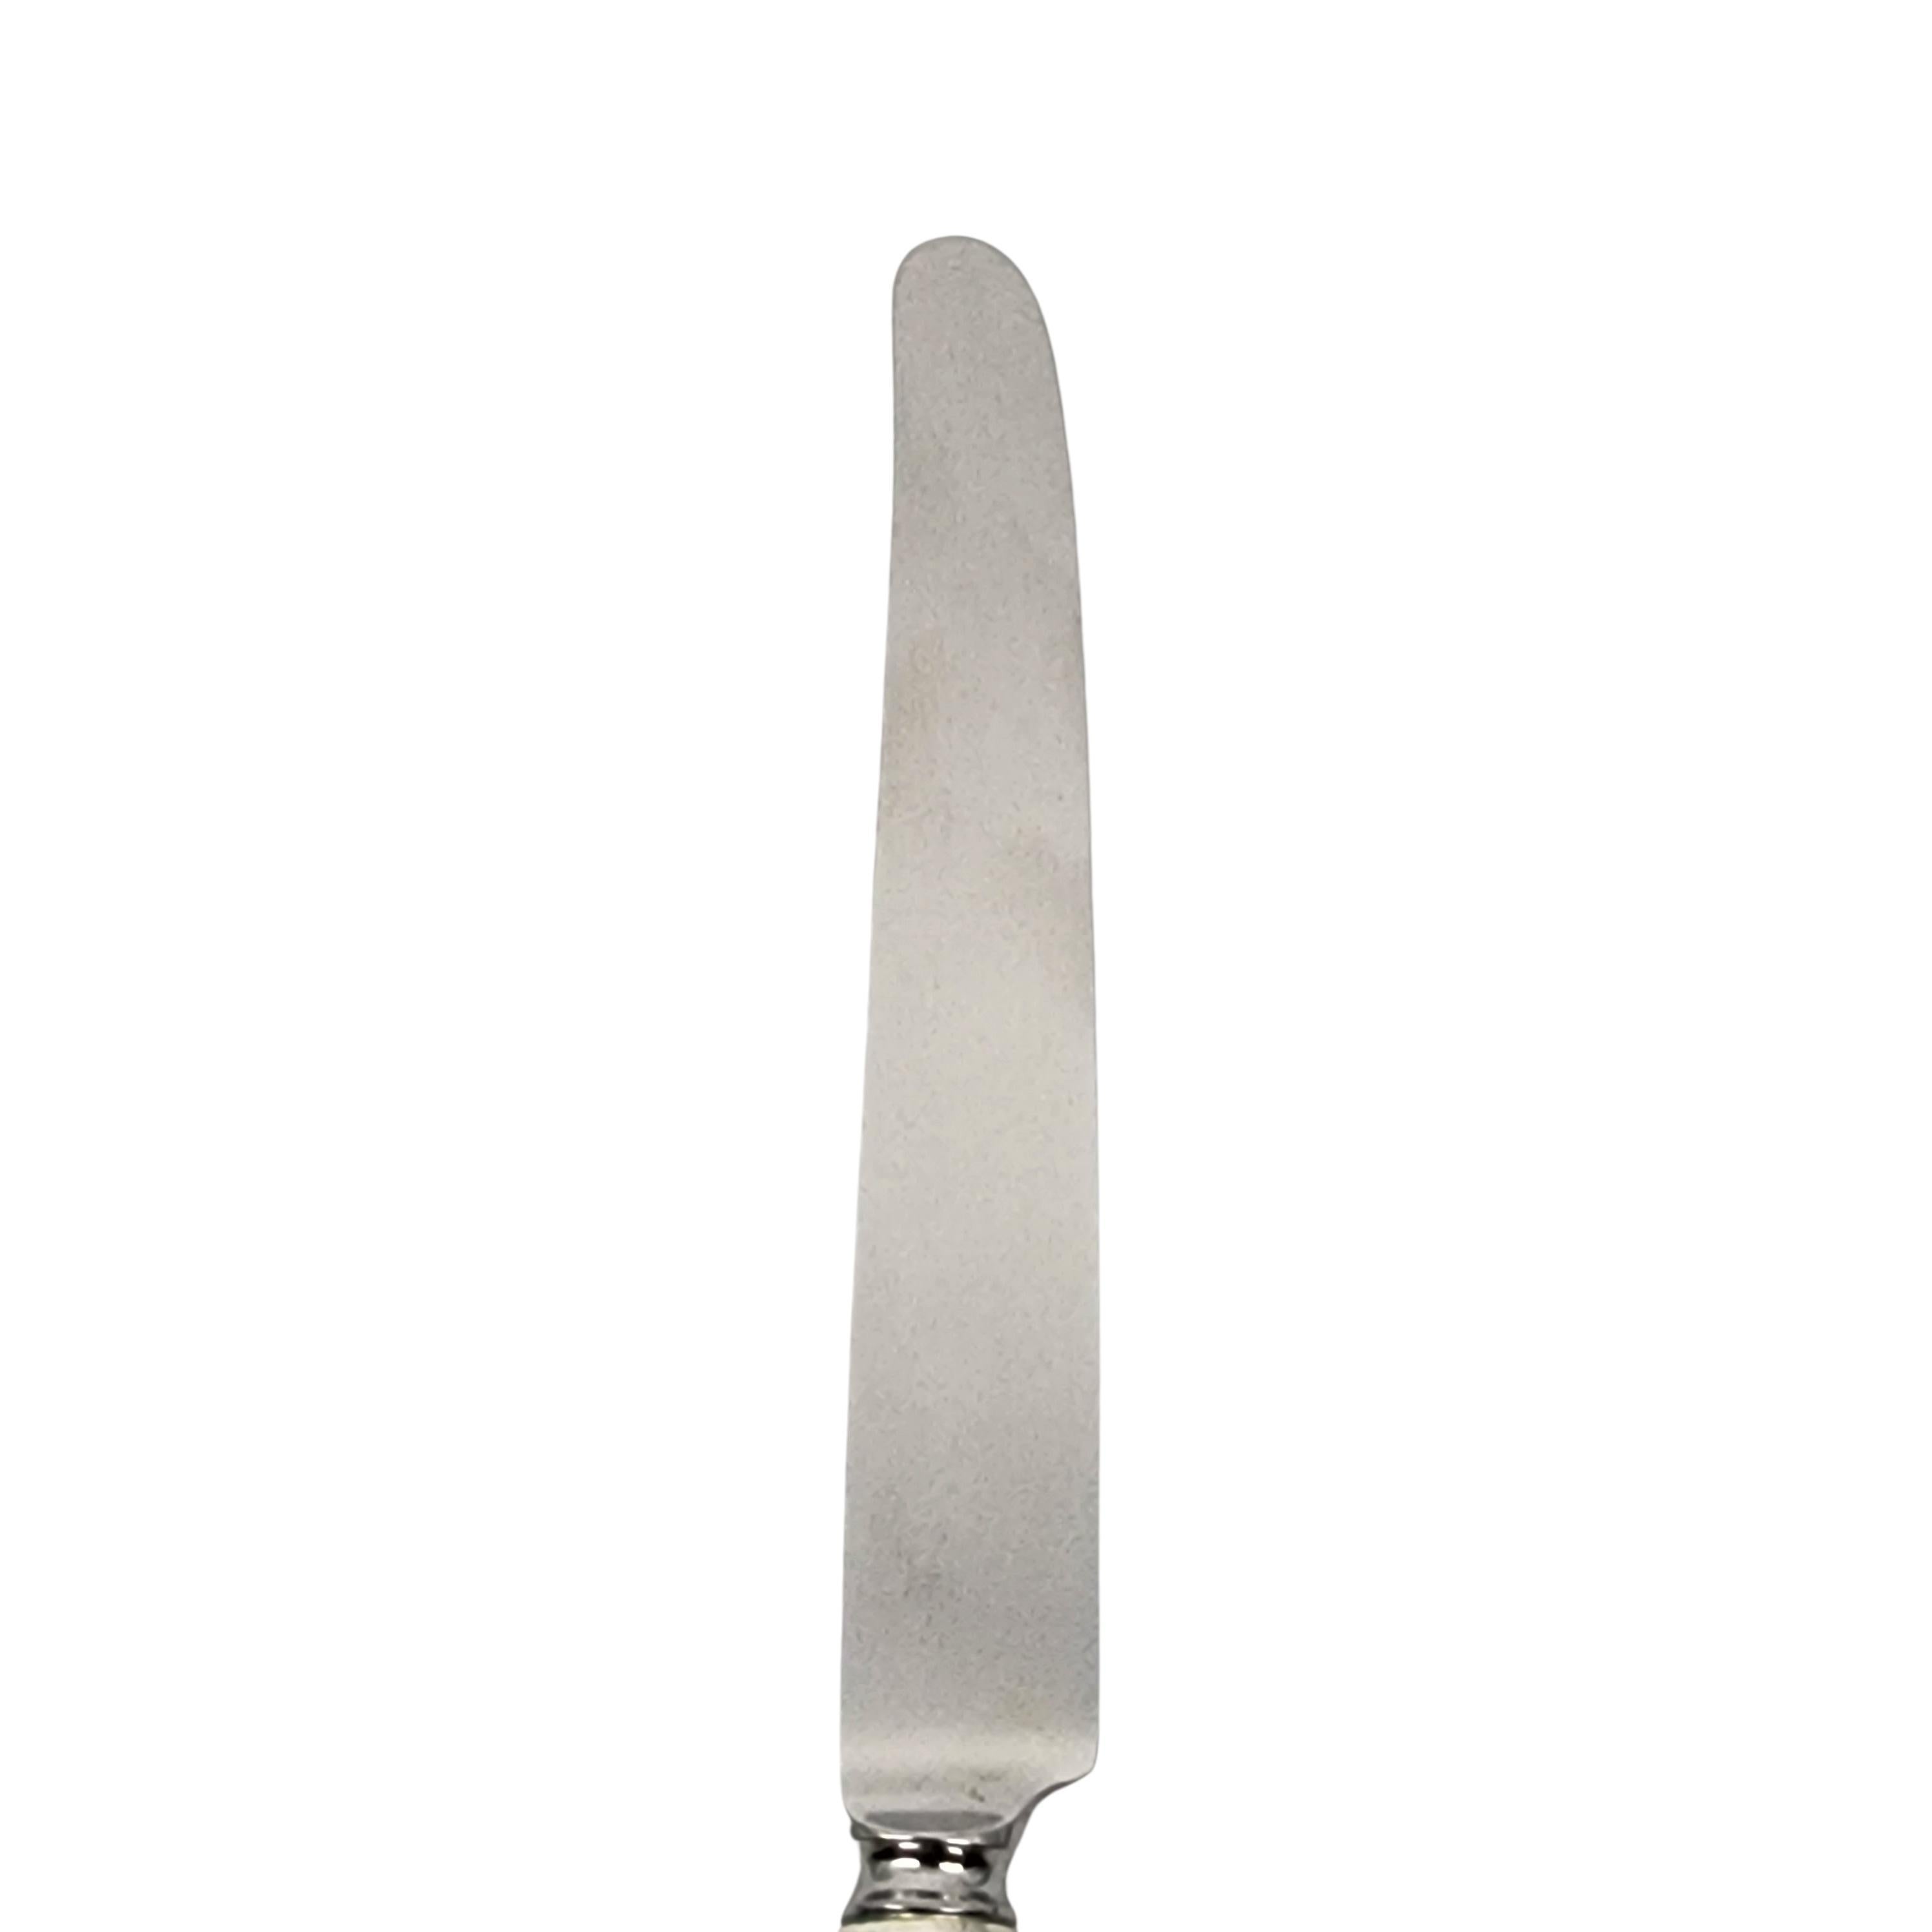 Satz von 2 Tiffany & Co Flemish Sterling Silber Griff Messer 10 1/8